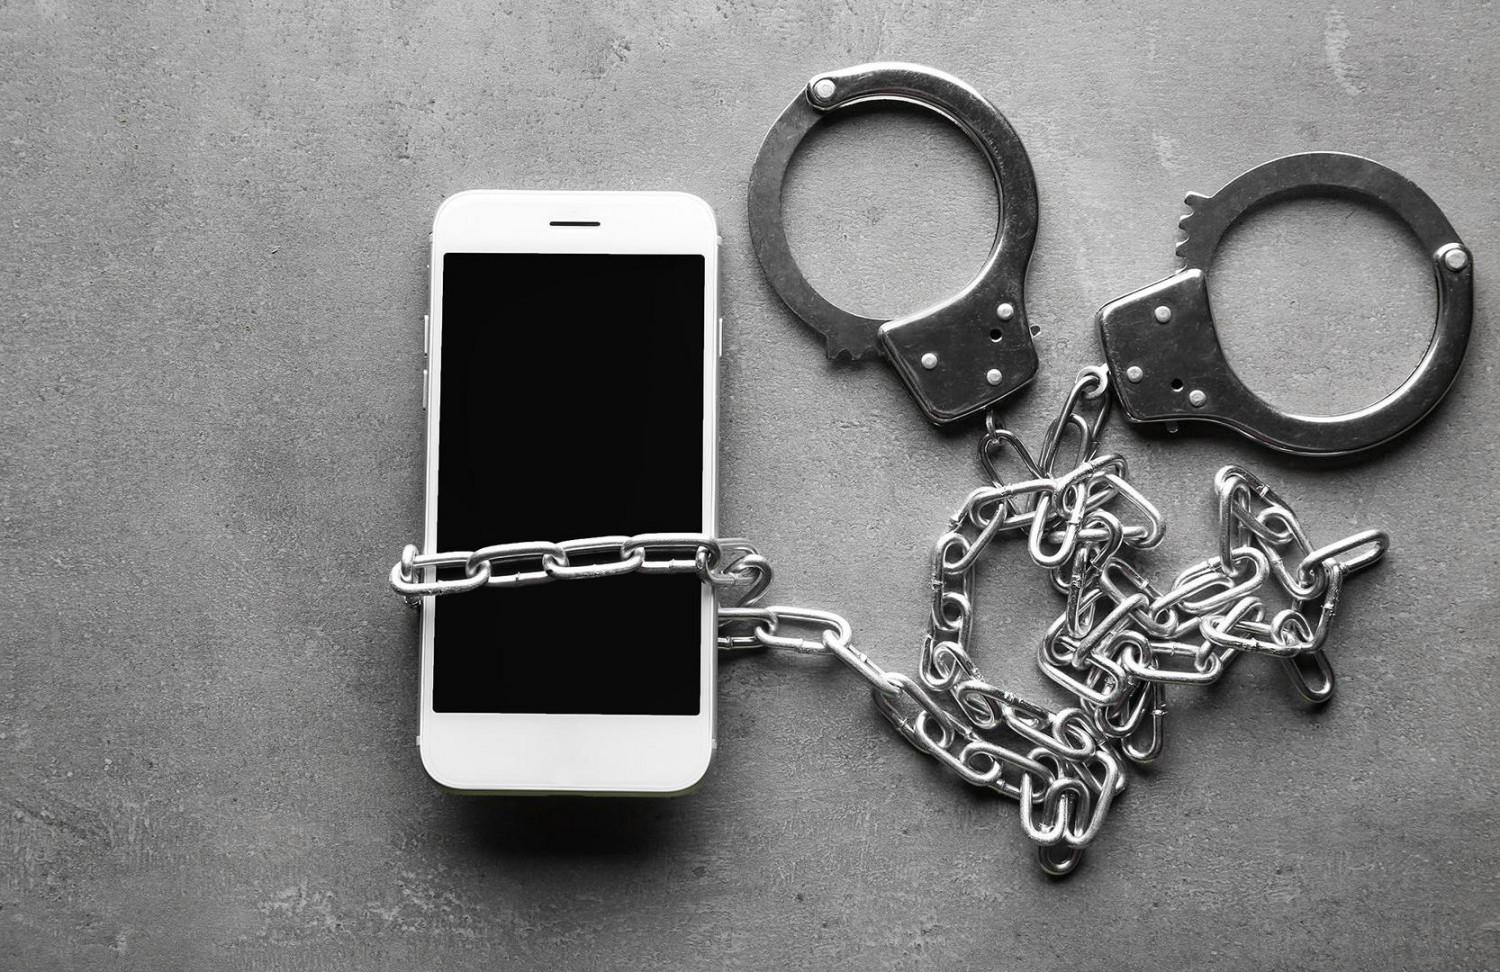 Мужчину приговорили к 3 годам условно за кражу телефона